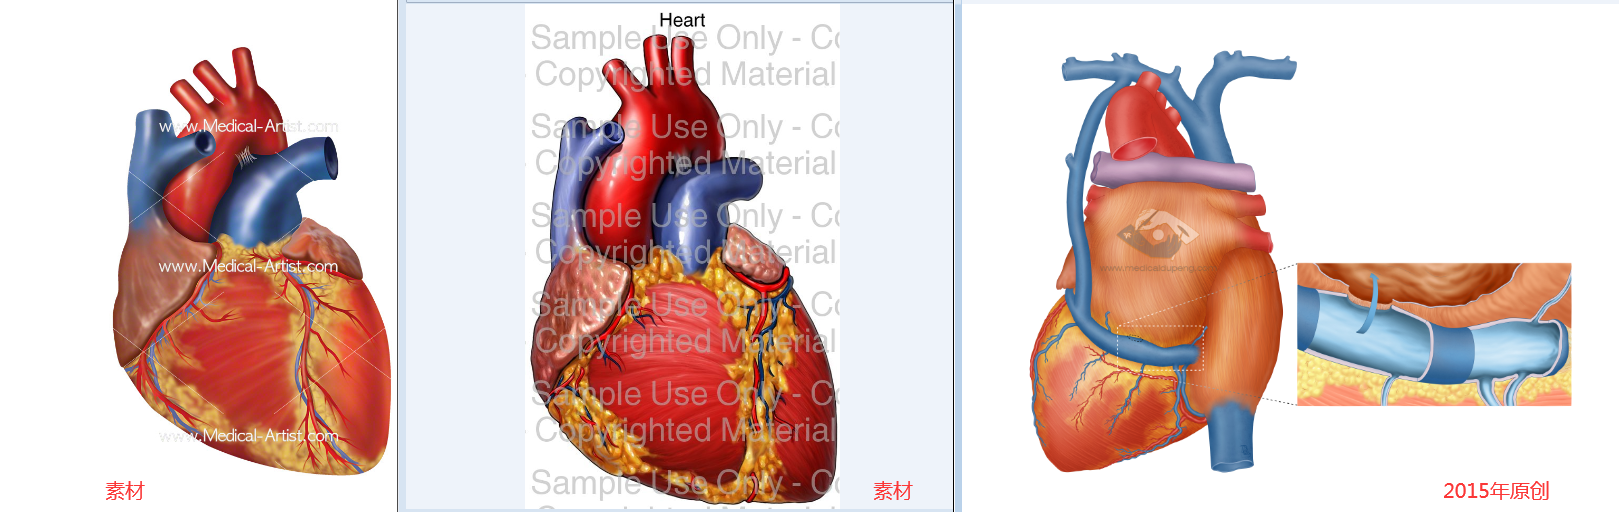 心脏参考图 - 素材和风格 医学插画师-动画师-阿杜的原创生物医学可视化社团作品